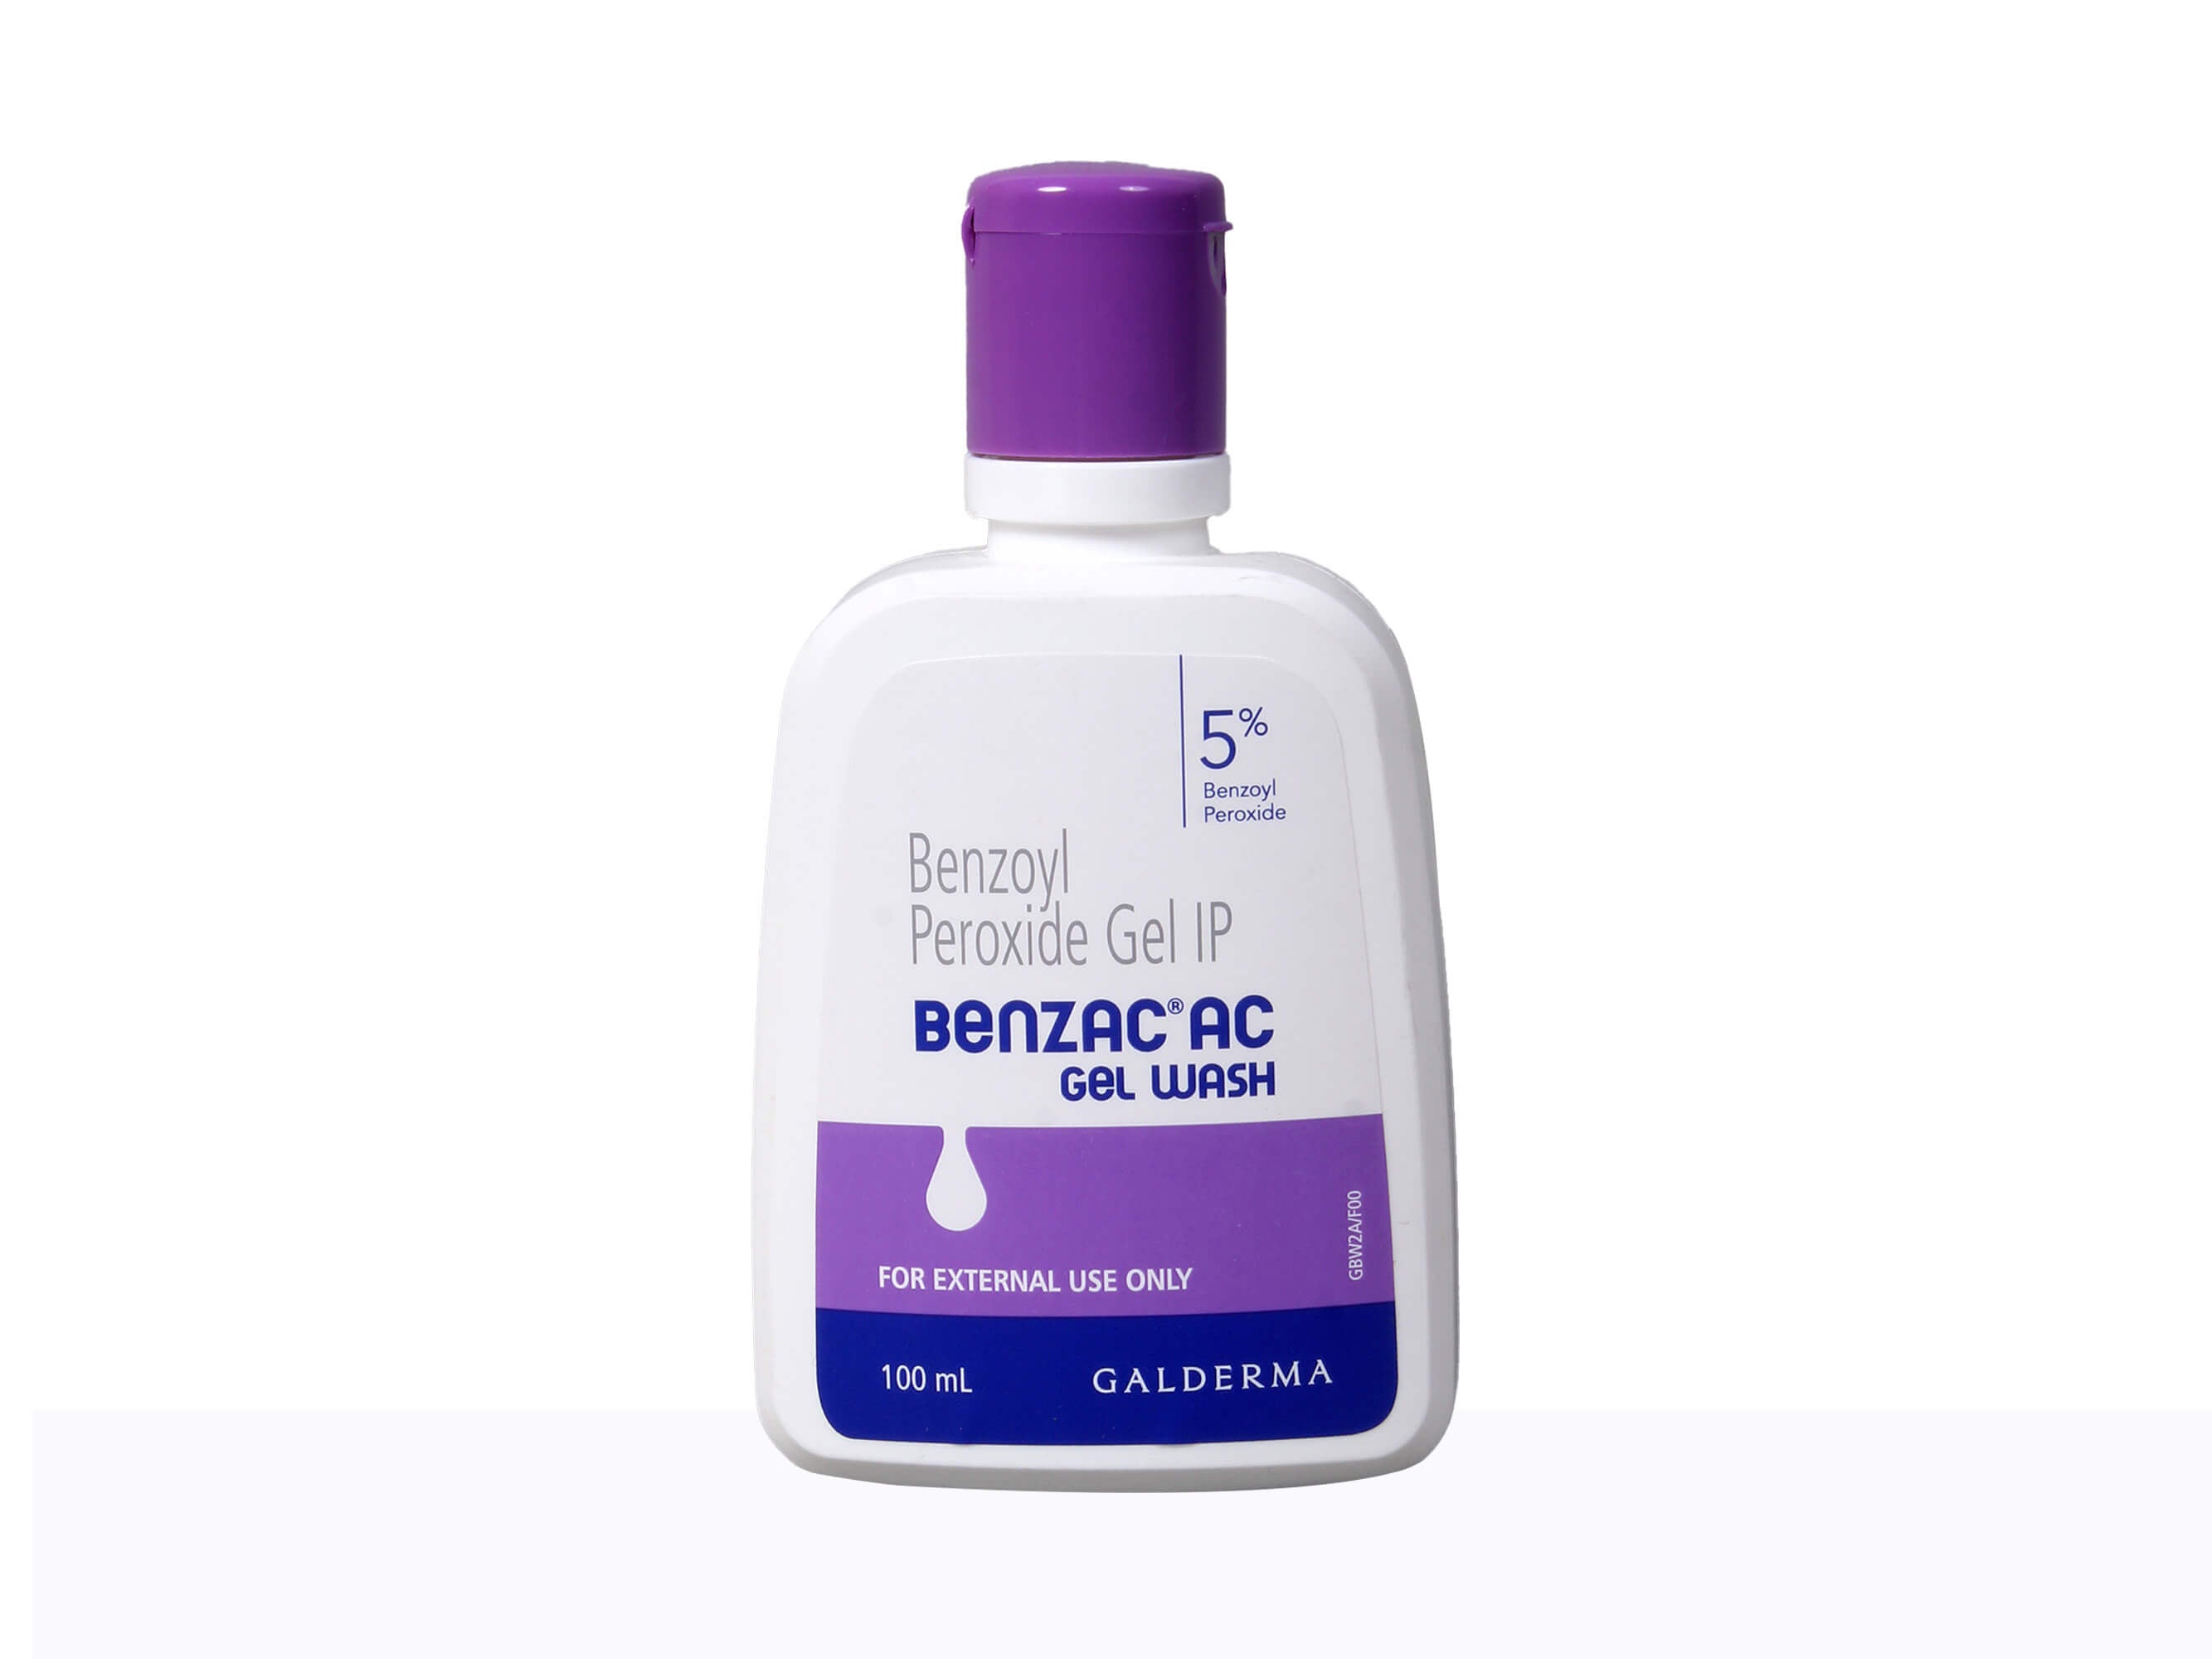 Benzac AC 5% Gel Wash - Clinikally